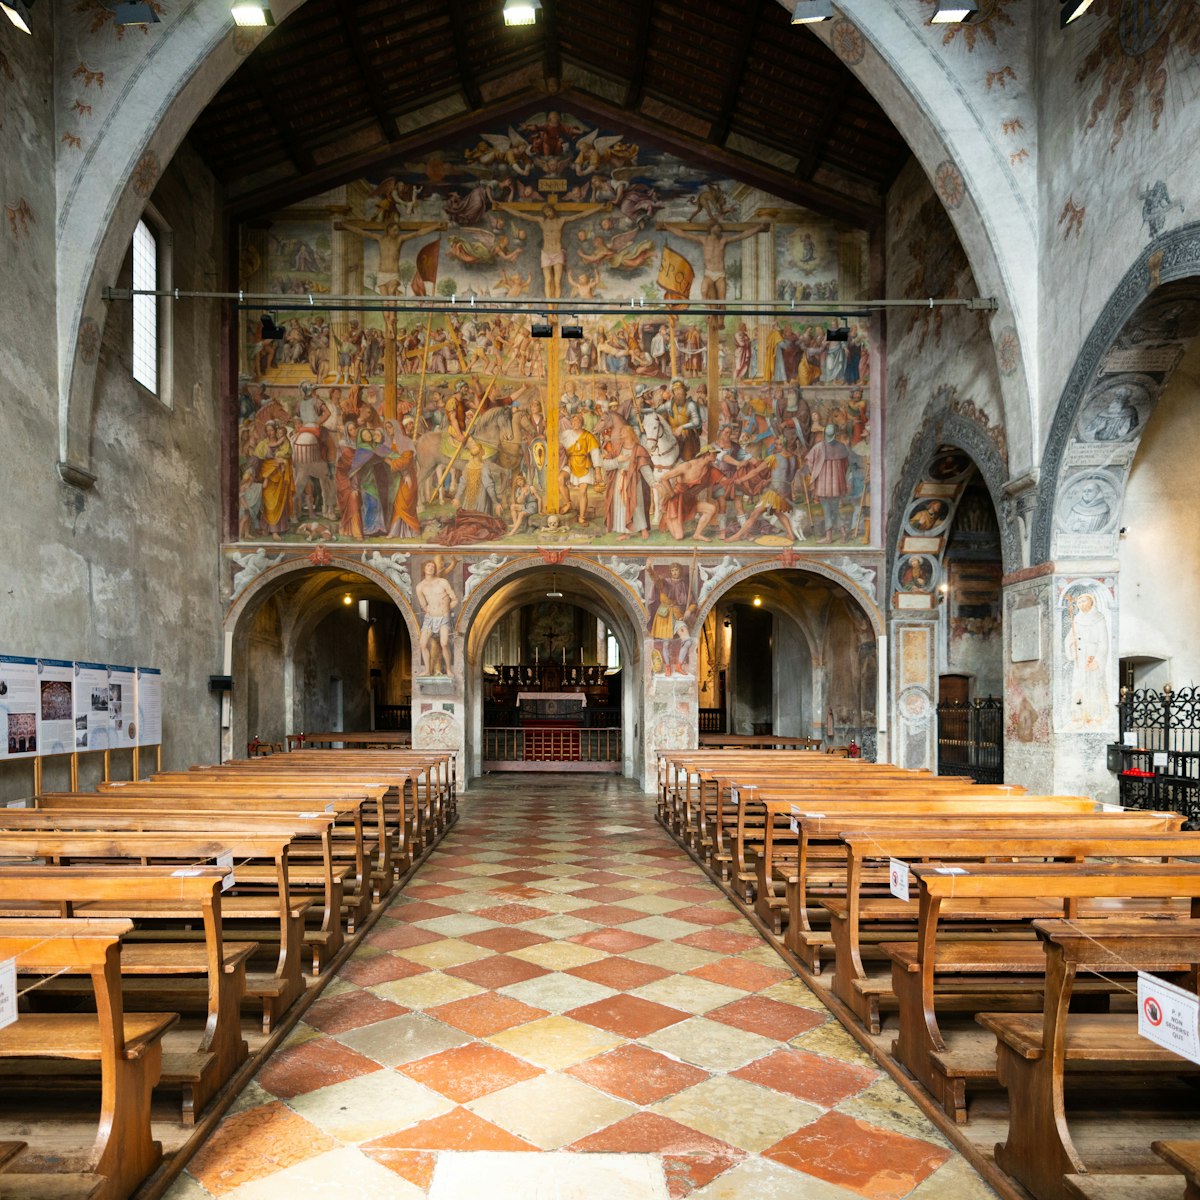 Interior of the church Santa Maria degli Angioli in Lugano, Switzerland.